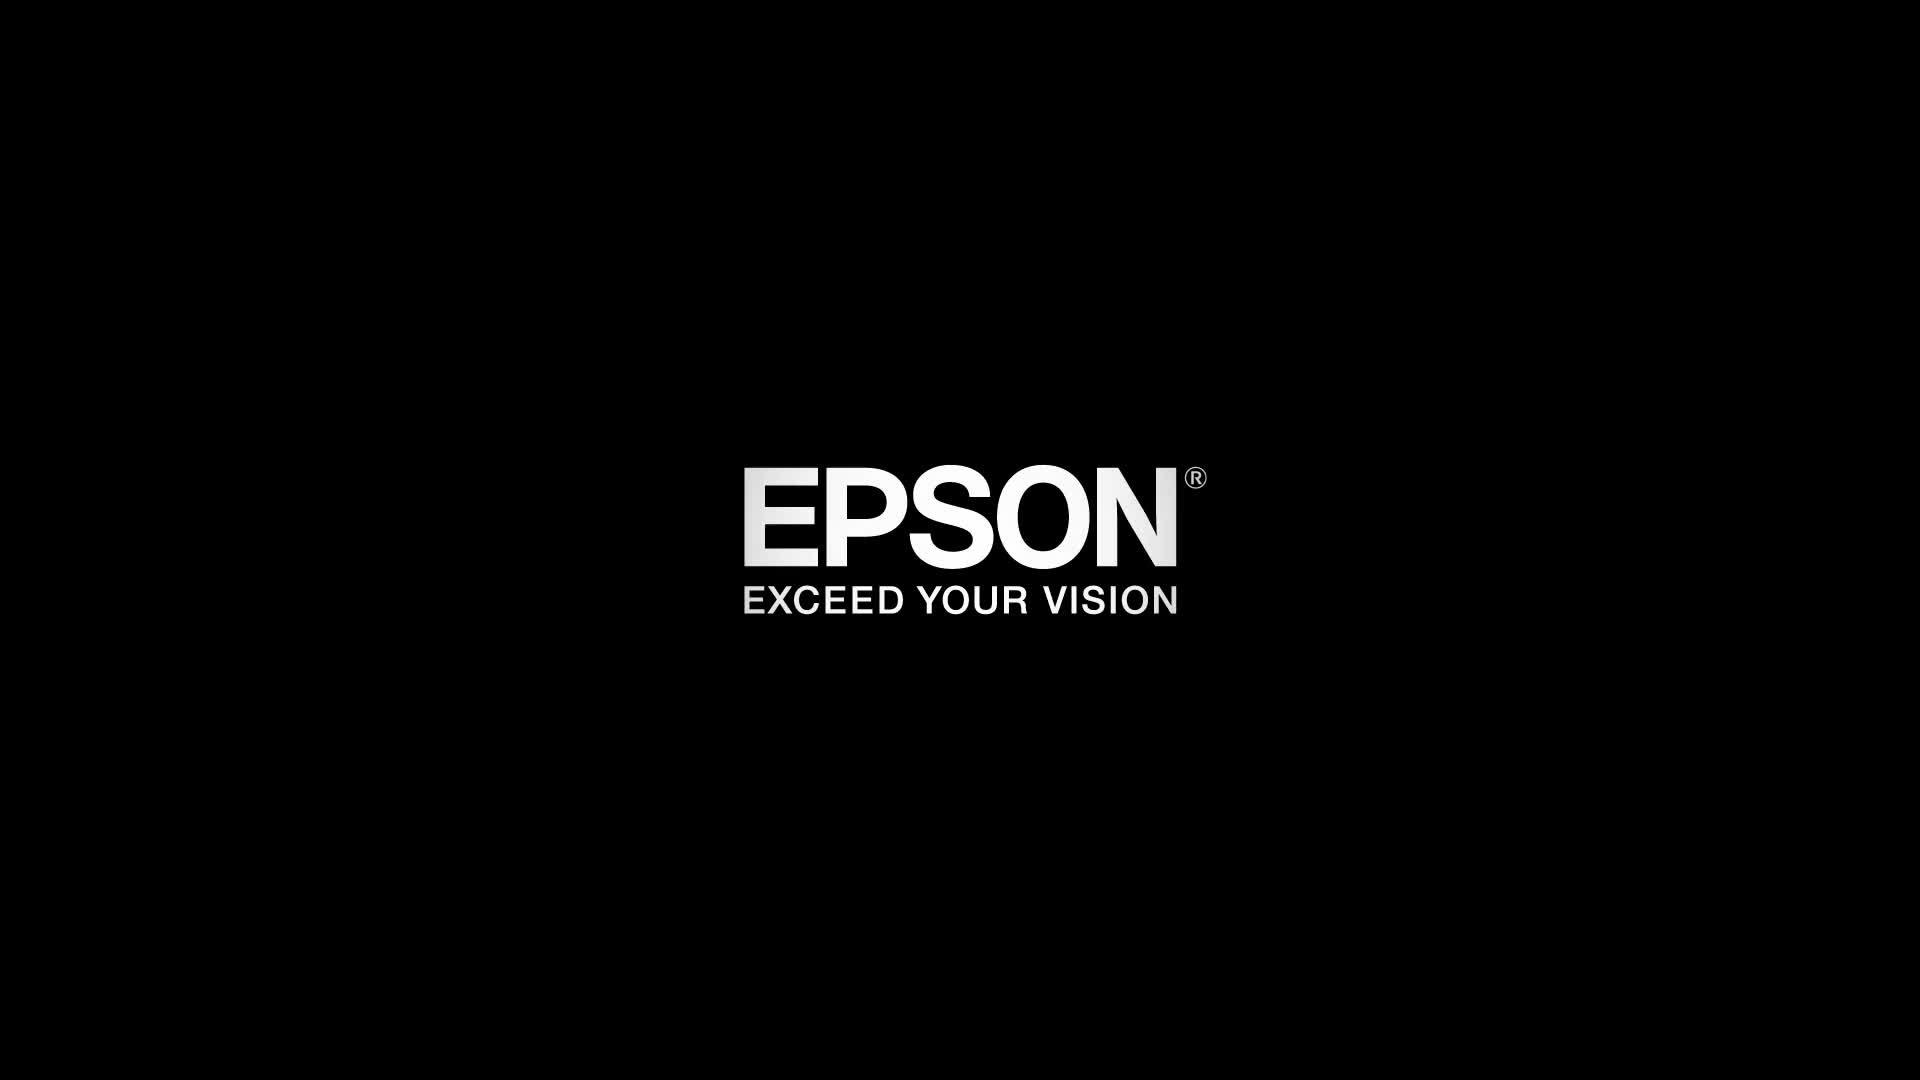 Impresora multifunción  Epson EcoTank ET-2814, Con depósito recargable,  Hasta 3 años de tinta incluida, Conexión Wi-Fi, 5 años garantía, Negro